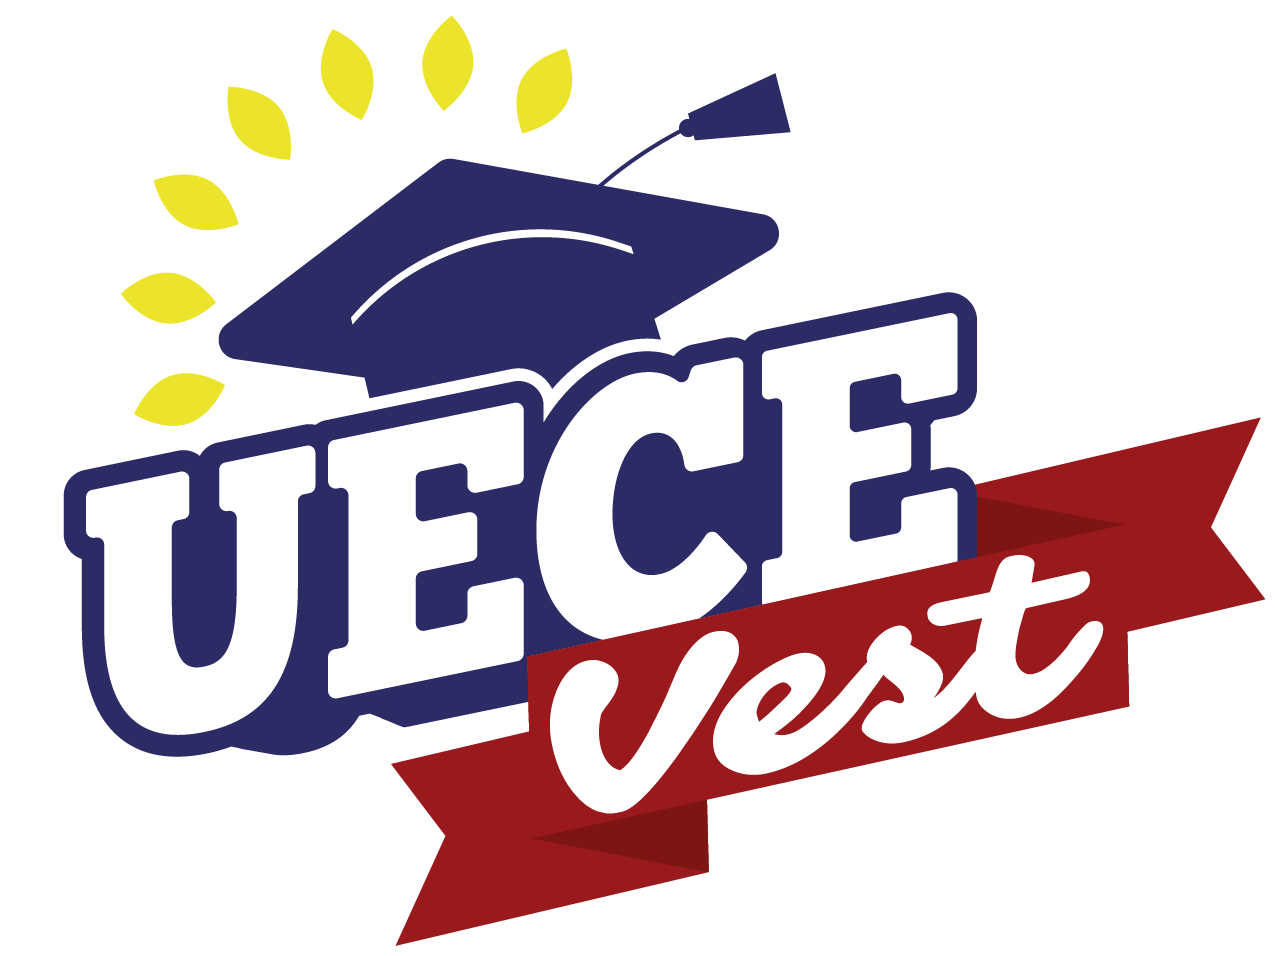 UECEVest oferece 32 vagas gratuitas para estudantes em situação de vulnerabilidade social